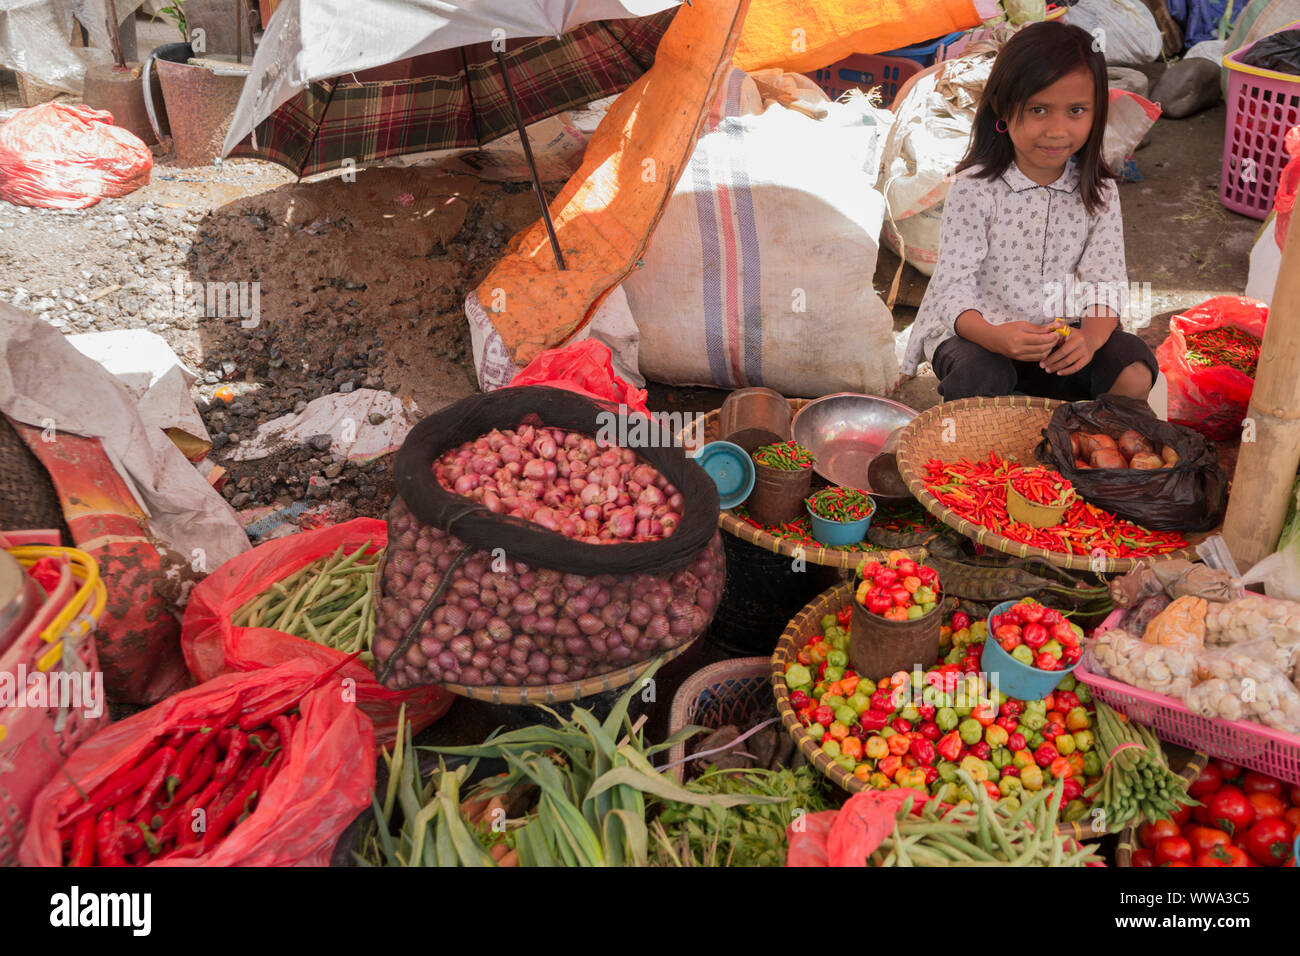 Fruit & vegetables, Market, Rantepao, Sulawesi, Indonesia, 2014 Stock Photo